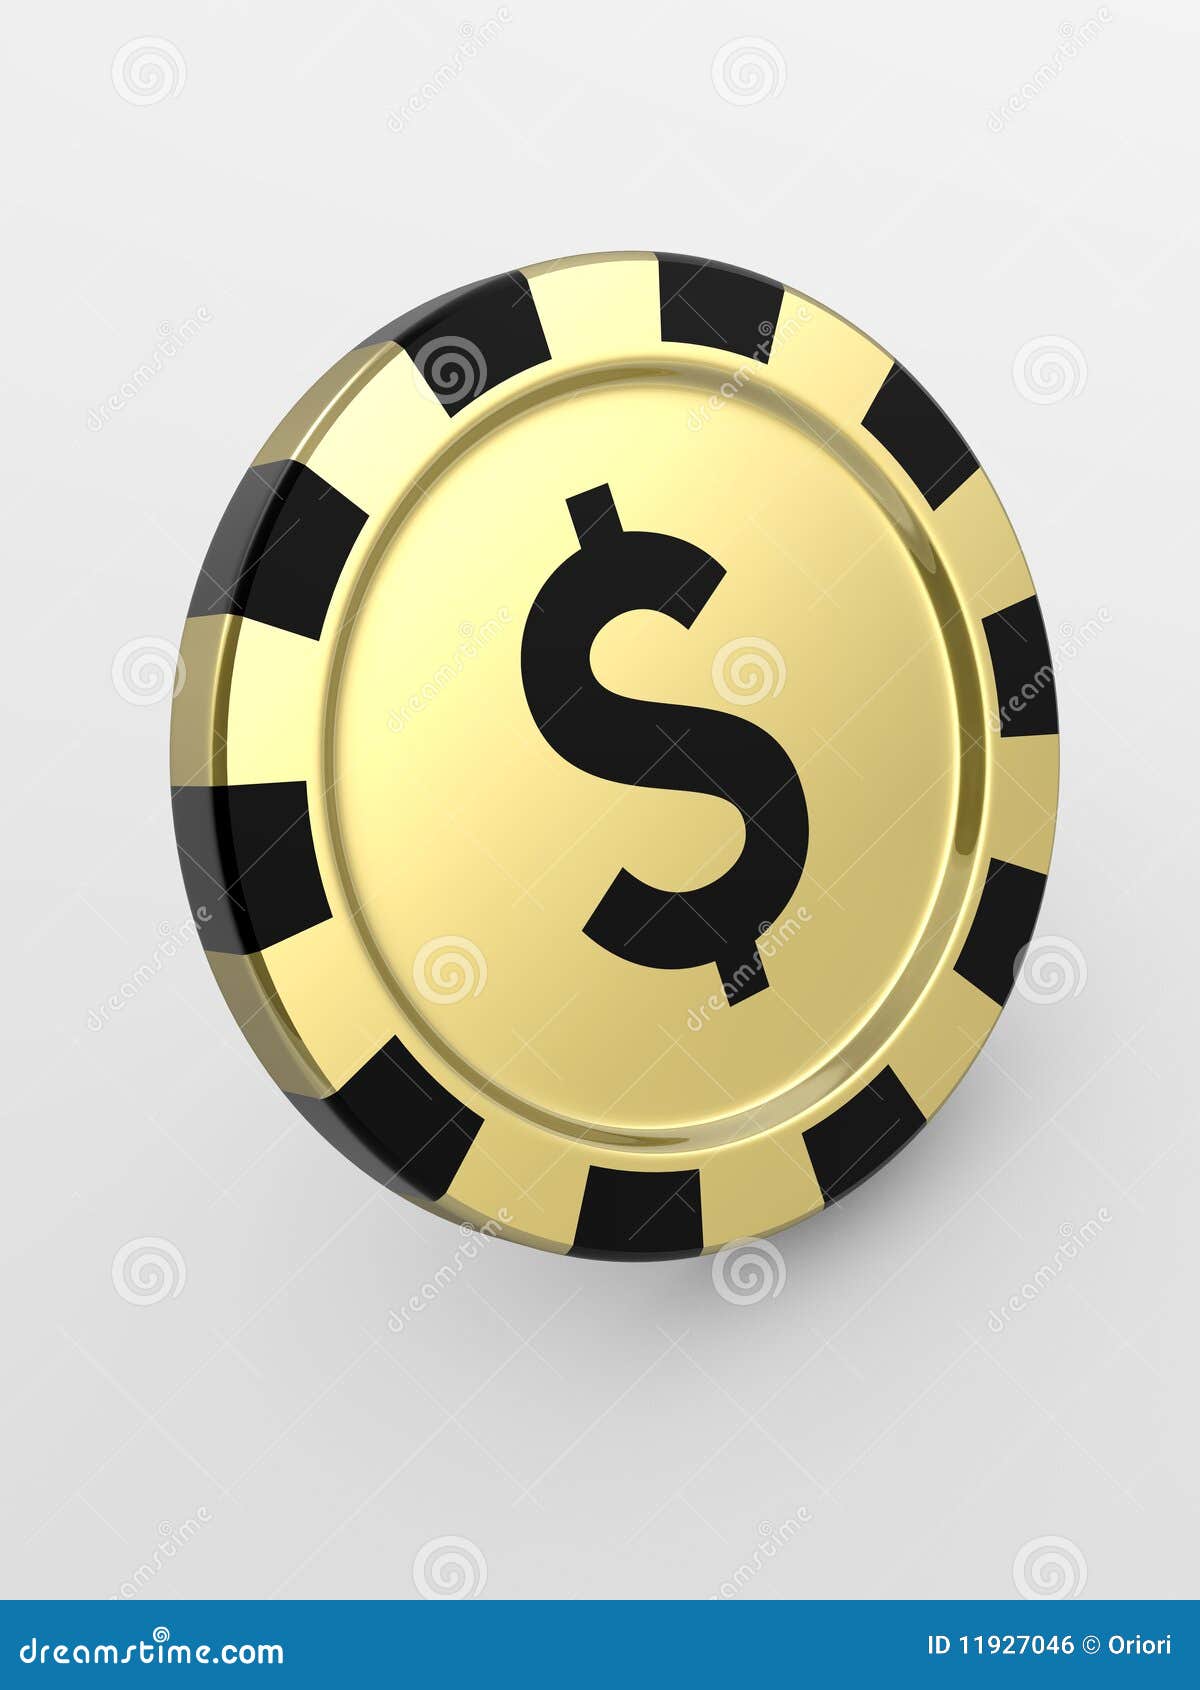 Download Golden Casino